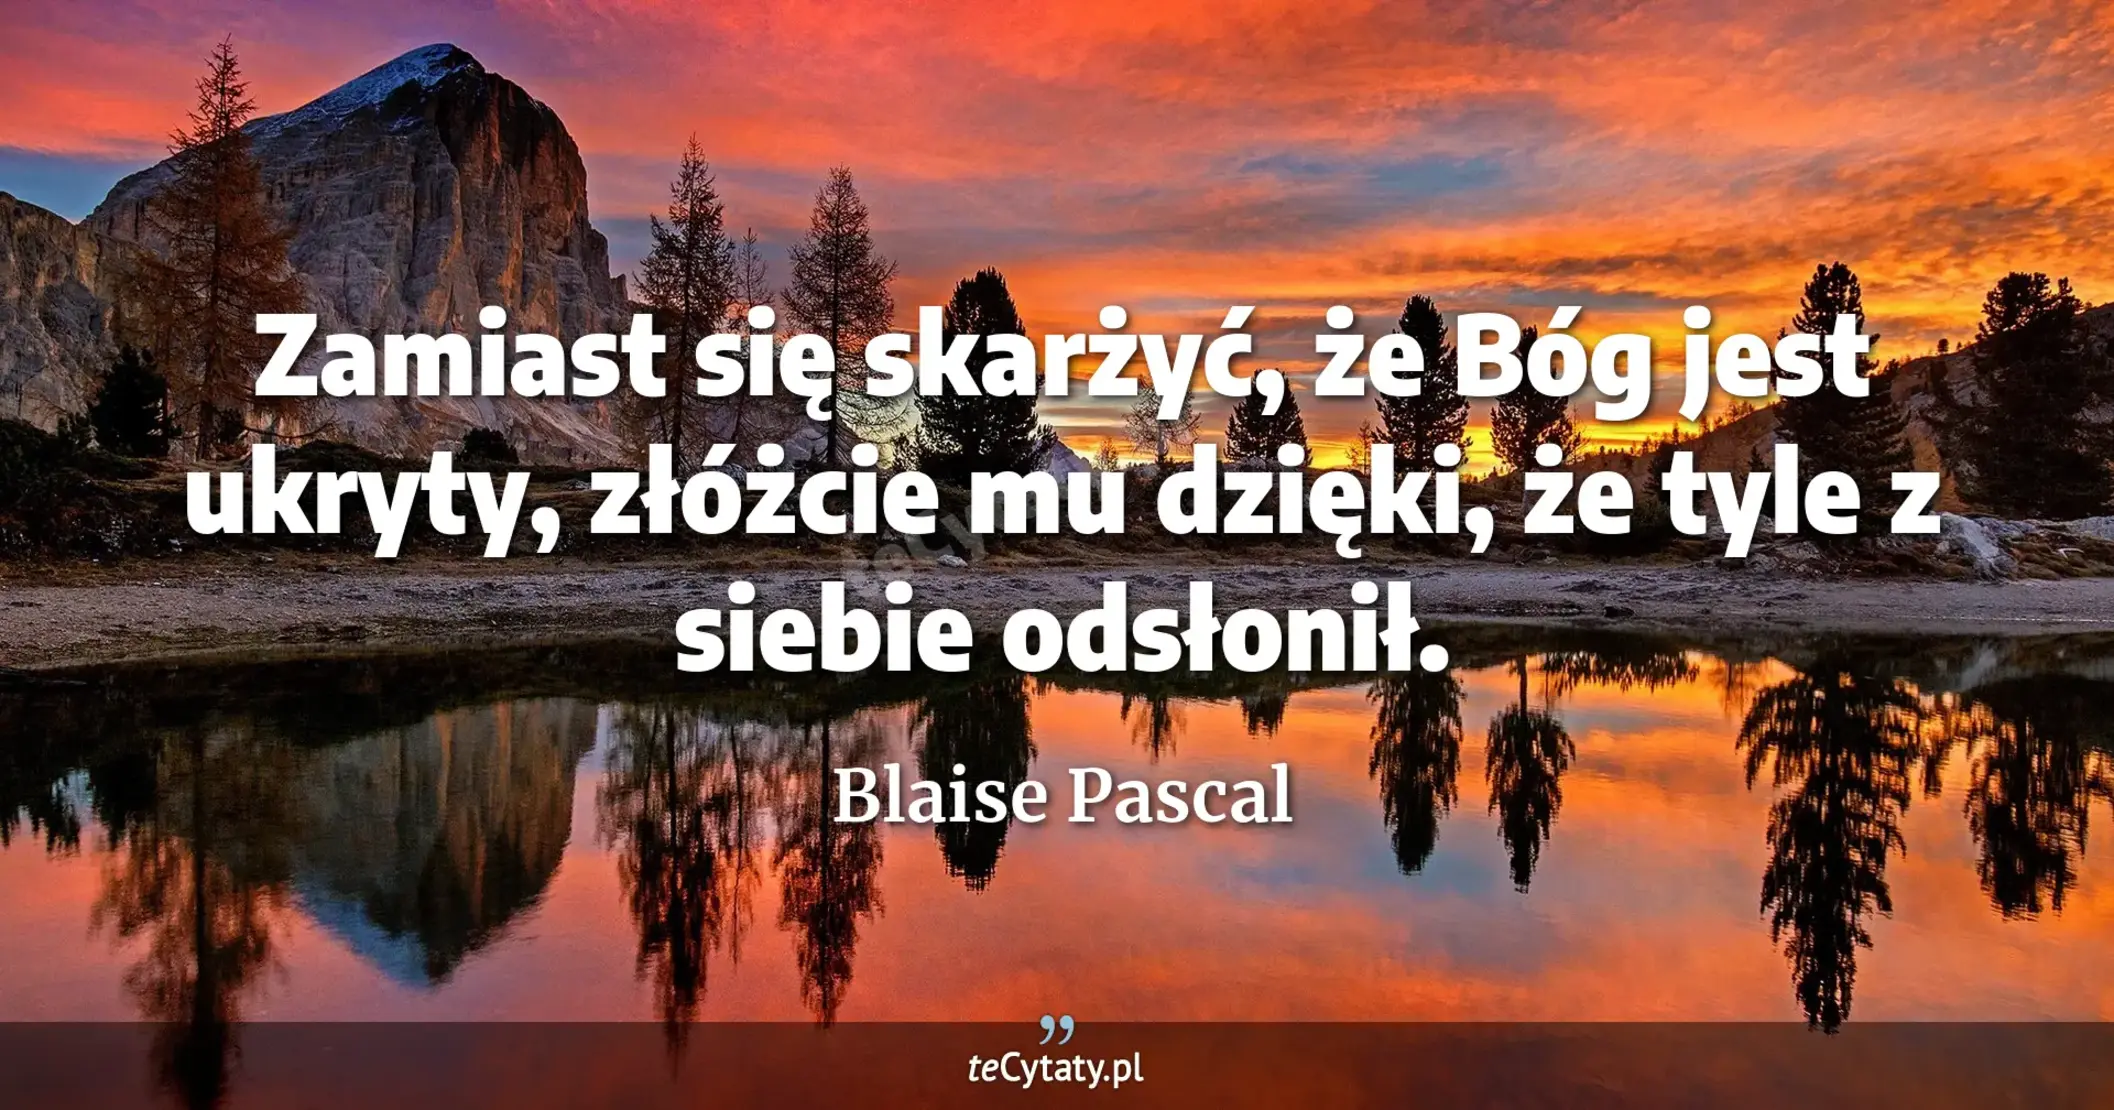 Zamiast się skarżyć, że Bóg jest ukryty, złóżcie mu dzięki, że tyle z siebie odsłonił. - Blaise Pascal